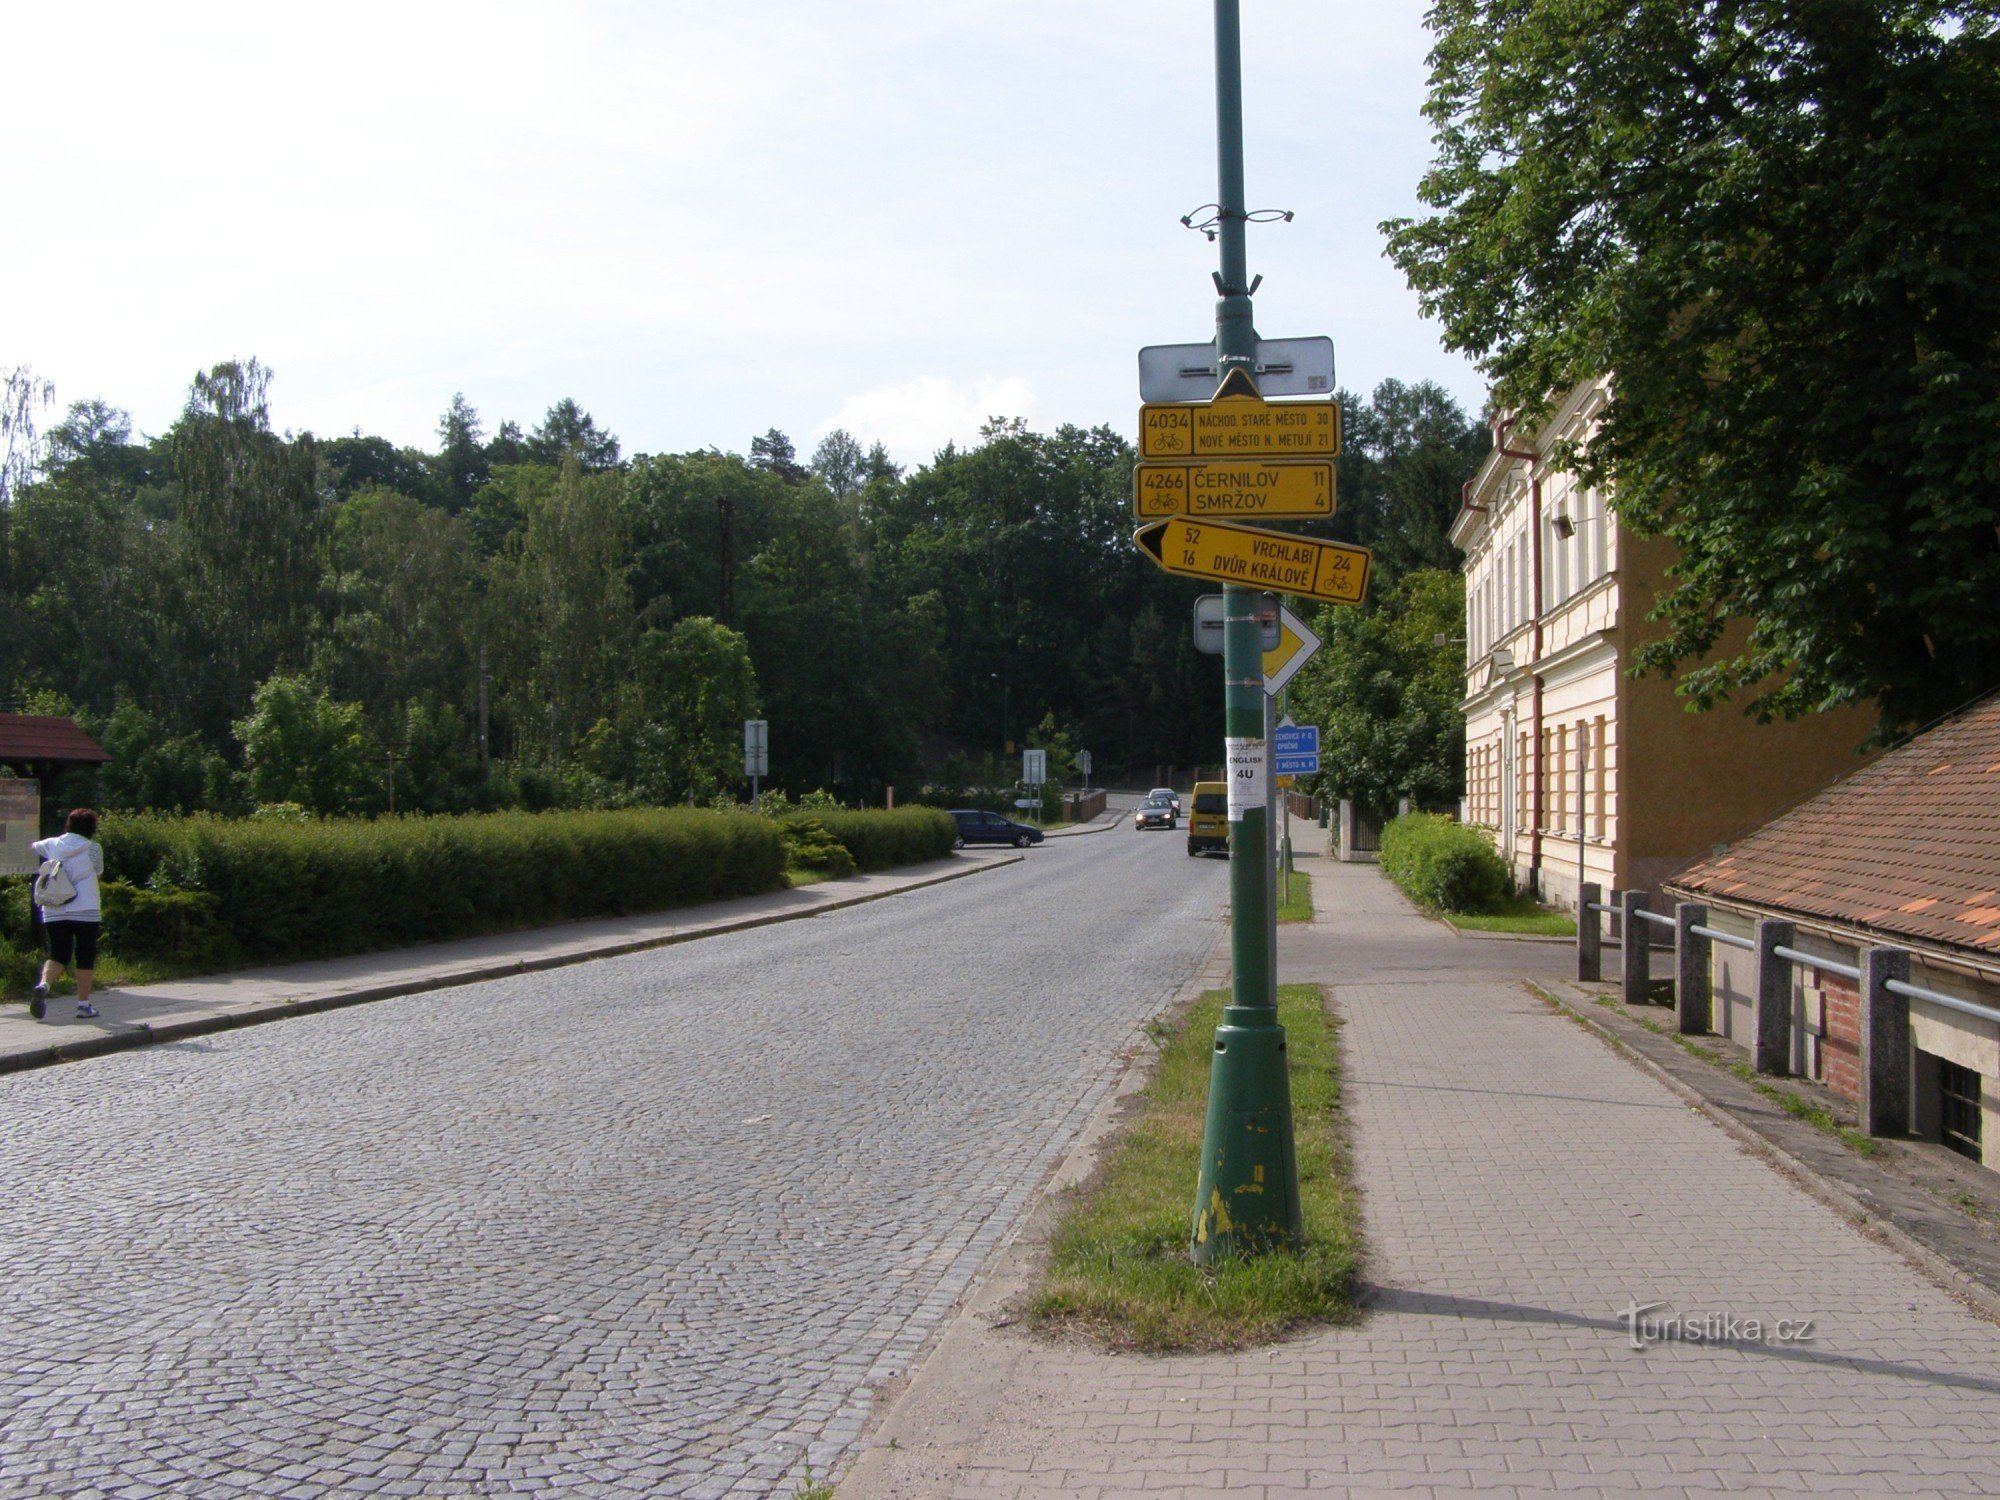 križišče kolesarskega turizma - Josefov, pri mostu